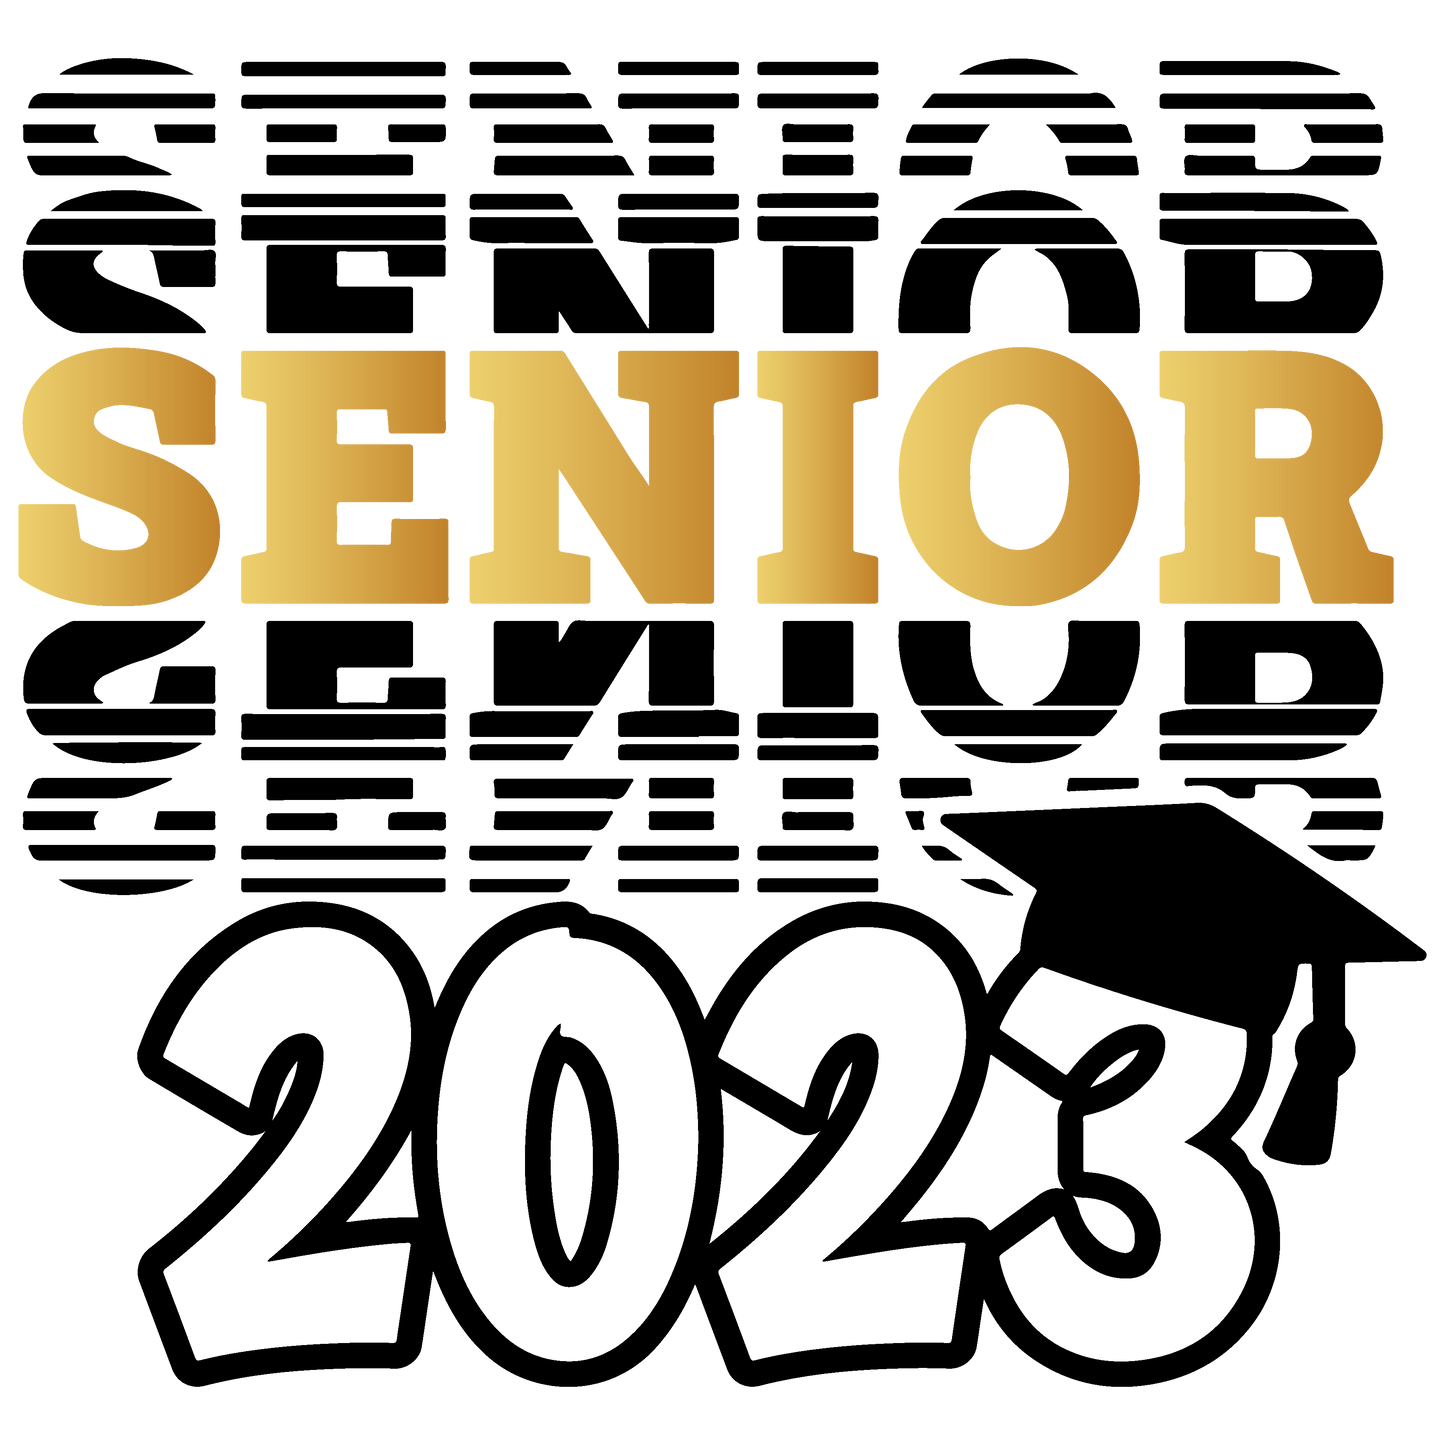 Senior 2023 Gold & Black Design Transfer